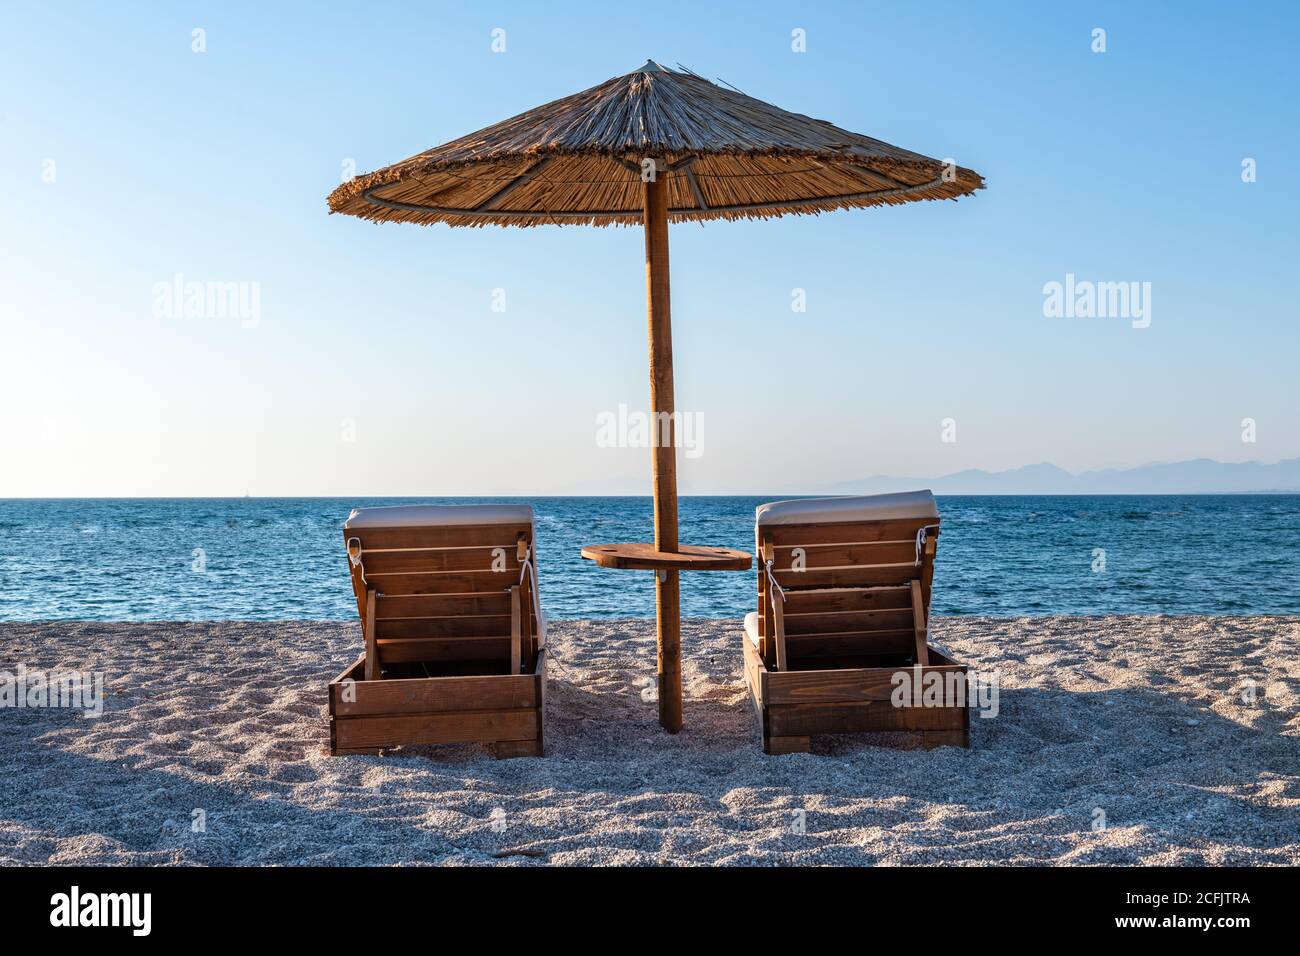 Ein schöner einsamer langer Sandstrand in heißer Sommersonne mit wolkenlosem blauen Himmel und Meer. Stockfoto